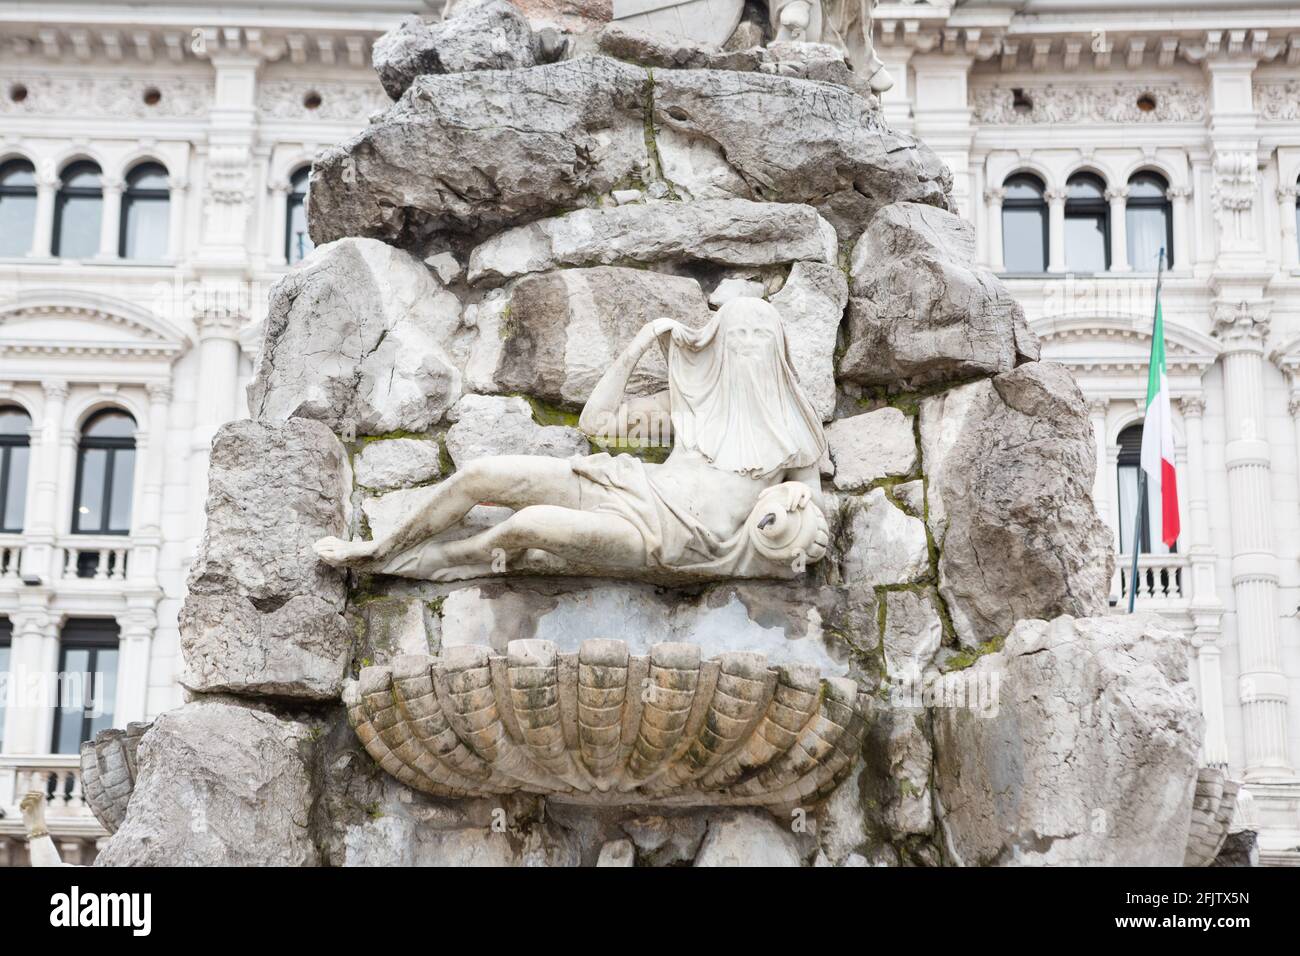 Fontana dei quattro continenti, Piazza Unità d'Italia, Trieste, Italia Foto Stock